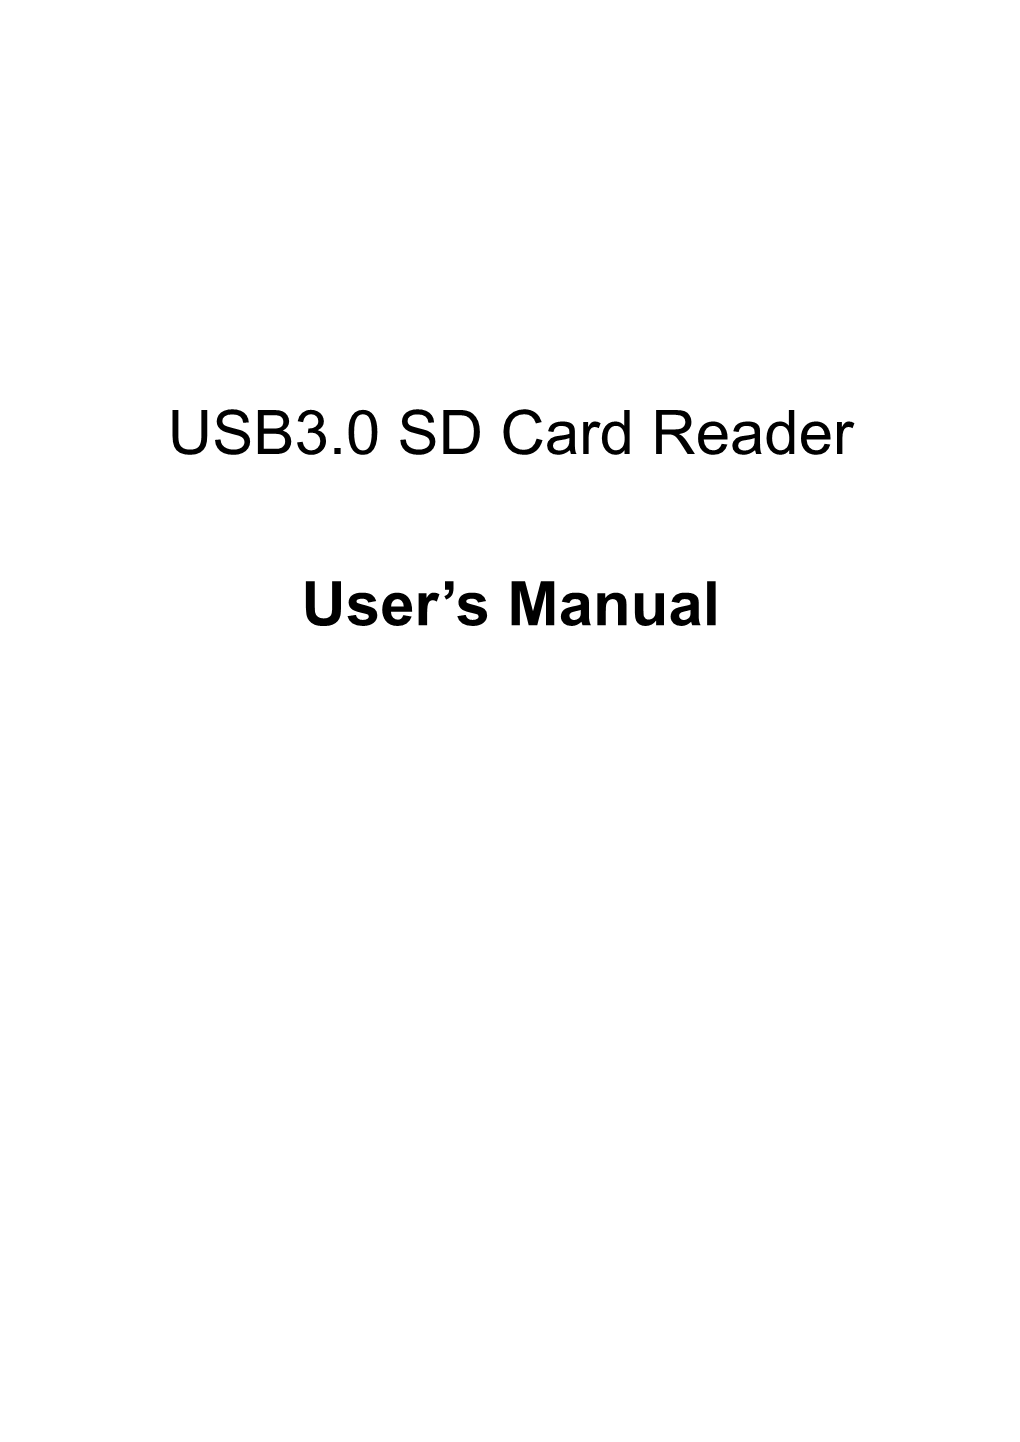 USB3.0 SD Card Reader User's Manual